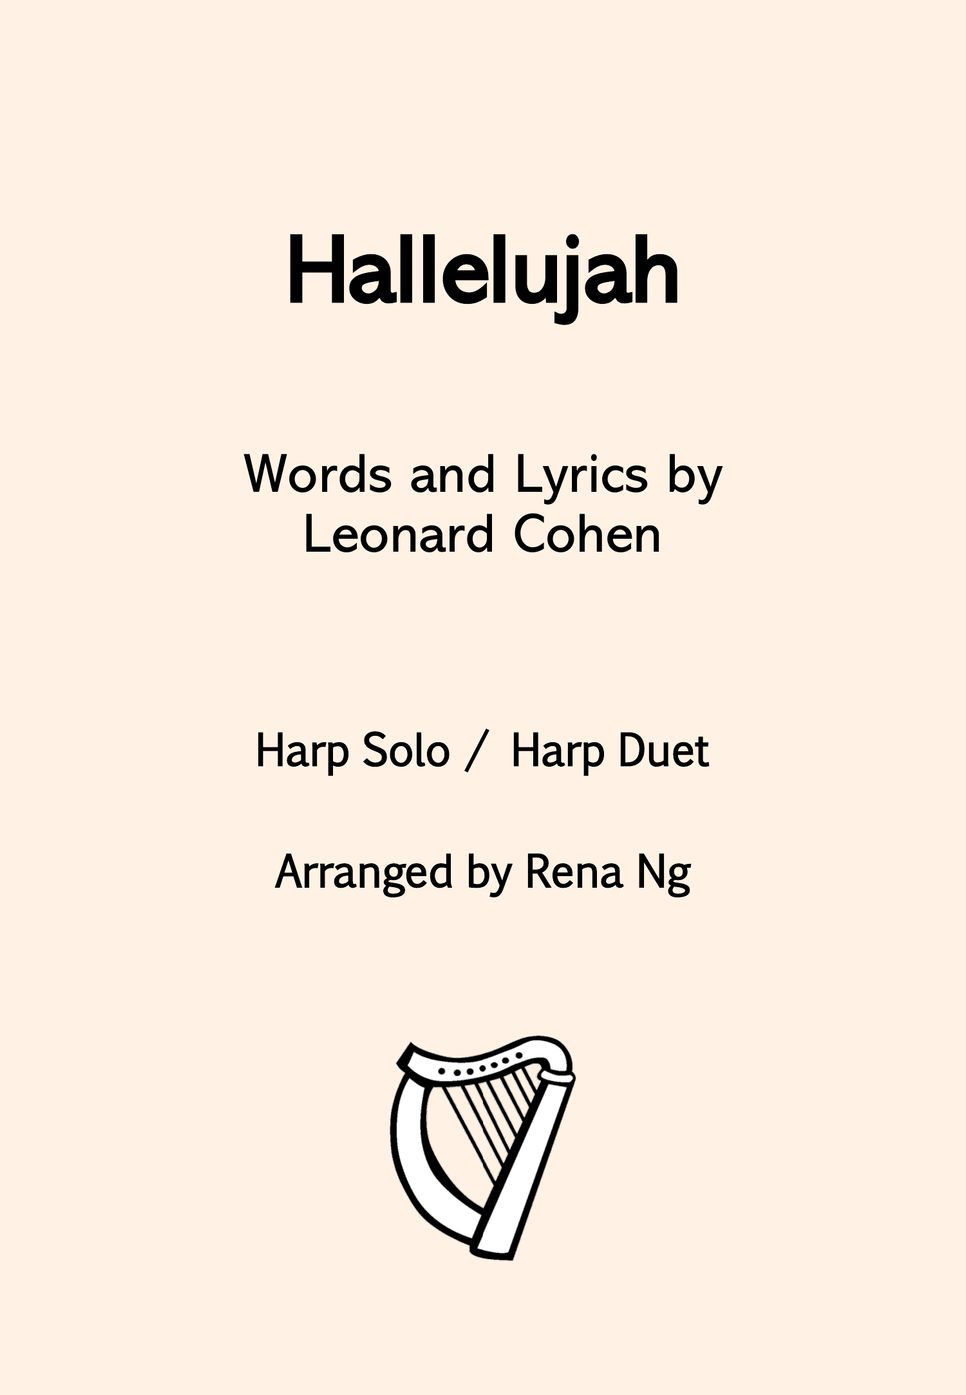 Leonard Cohen - Hallelujah (Harp Solo or Duet / Harp & Piano) by Harp With Me